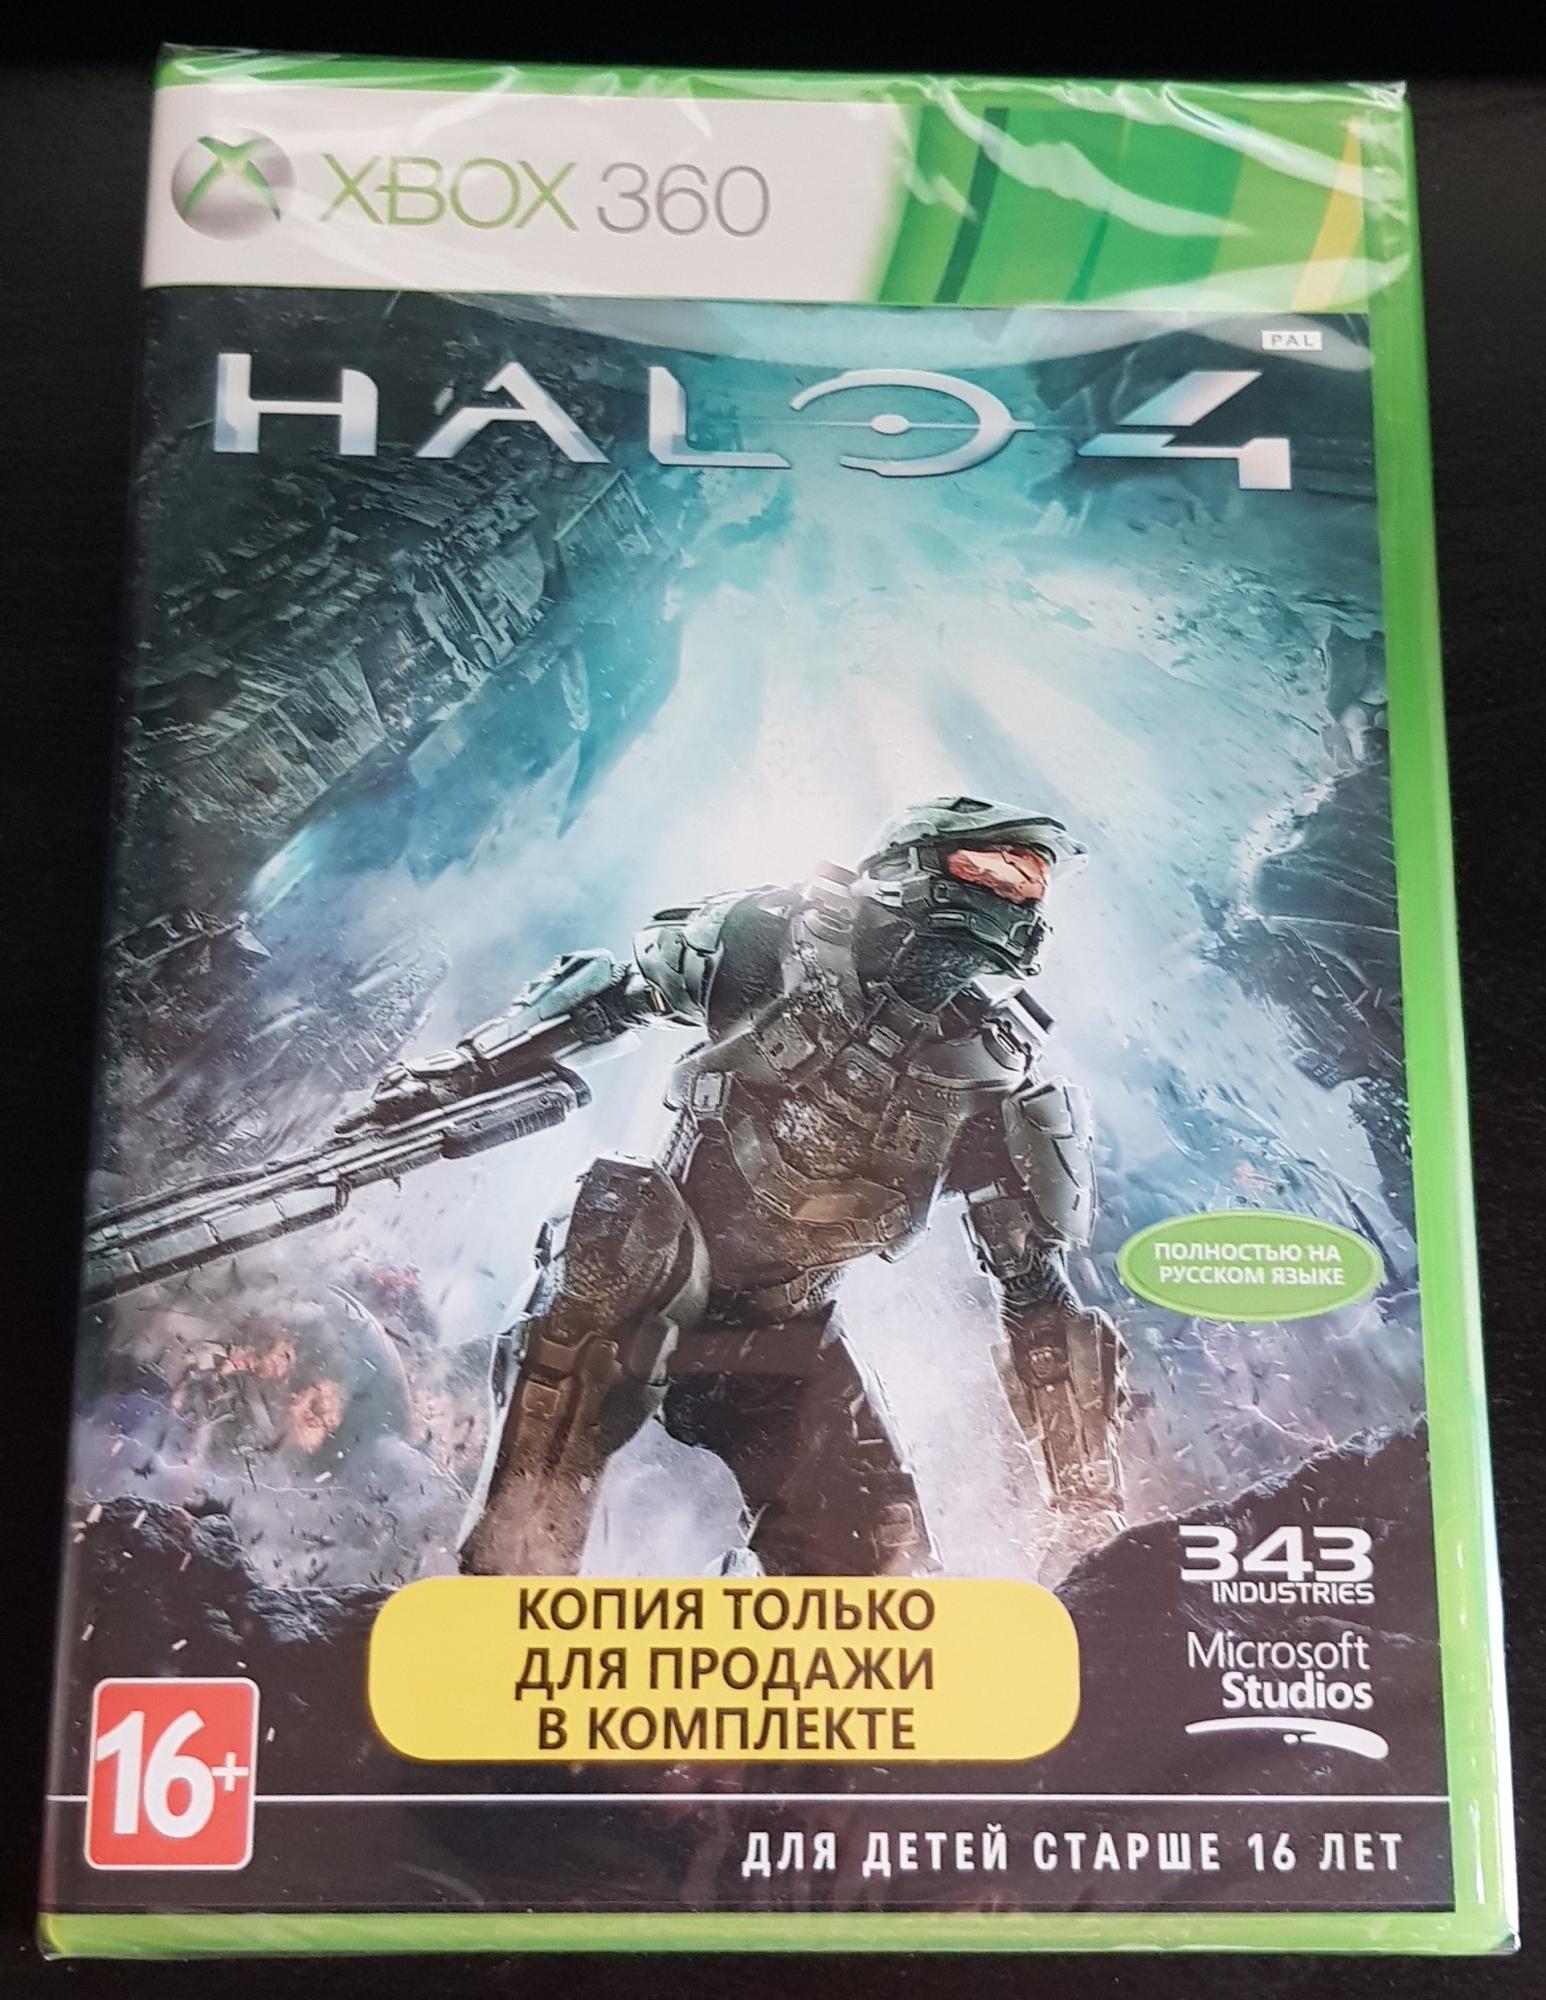 Игра Halo 4 для Xbox 360 89256150066 купить 1